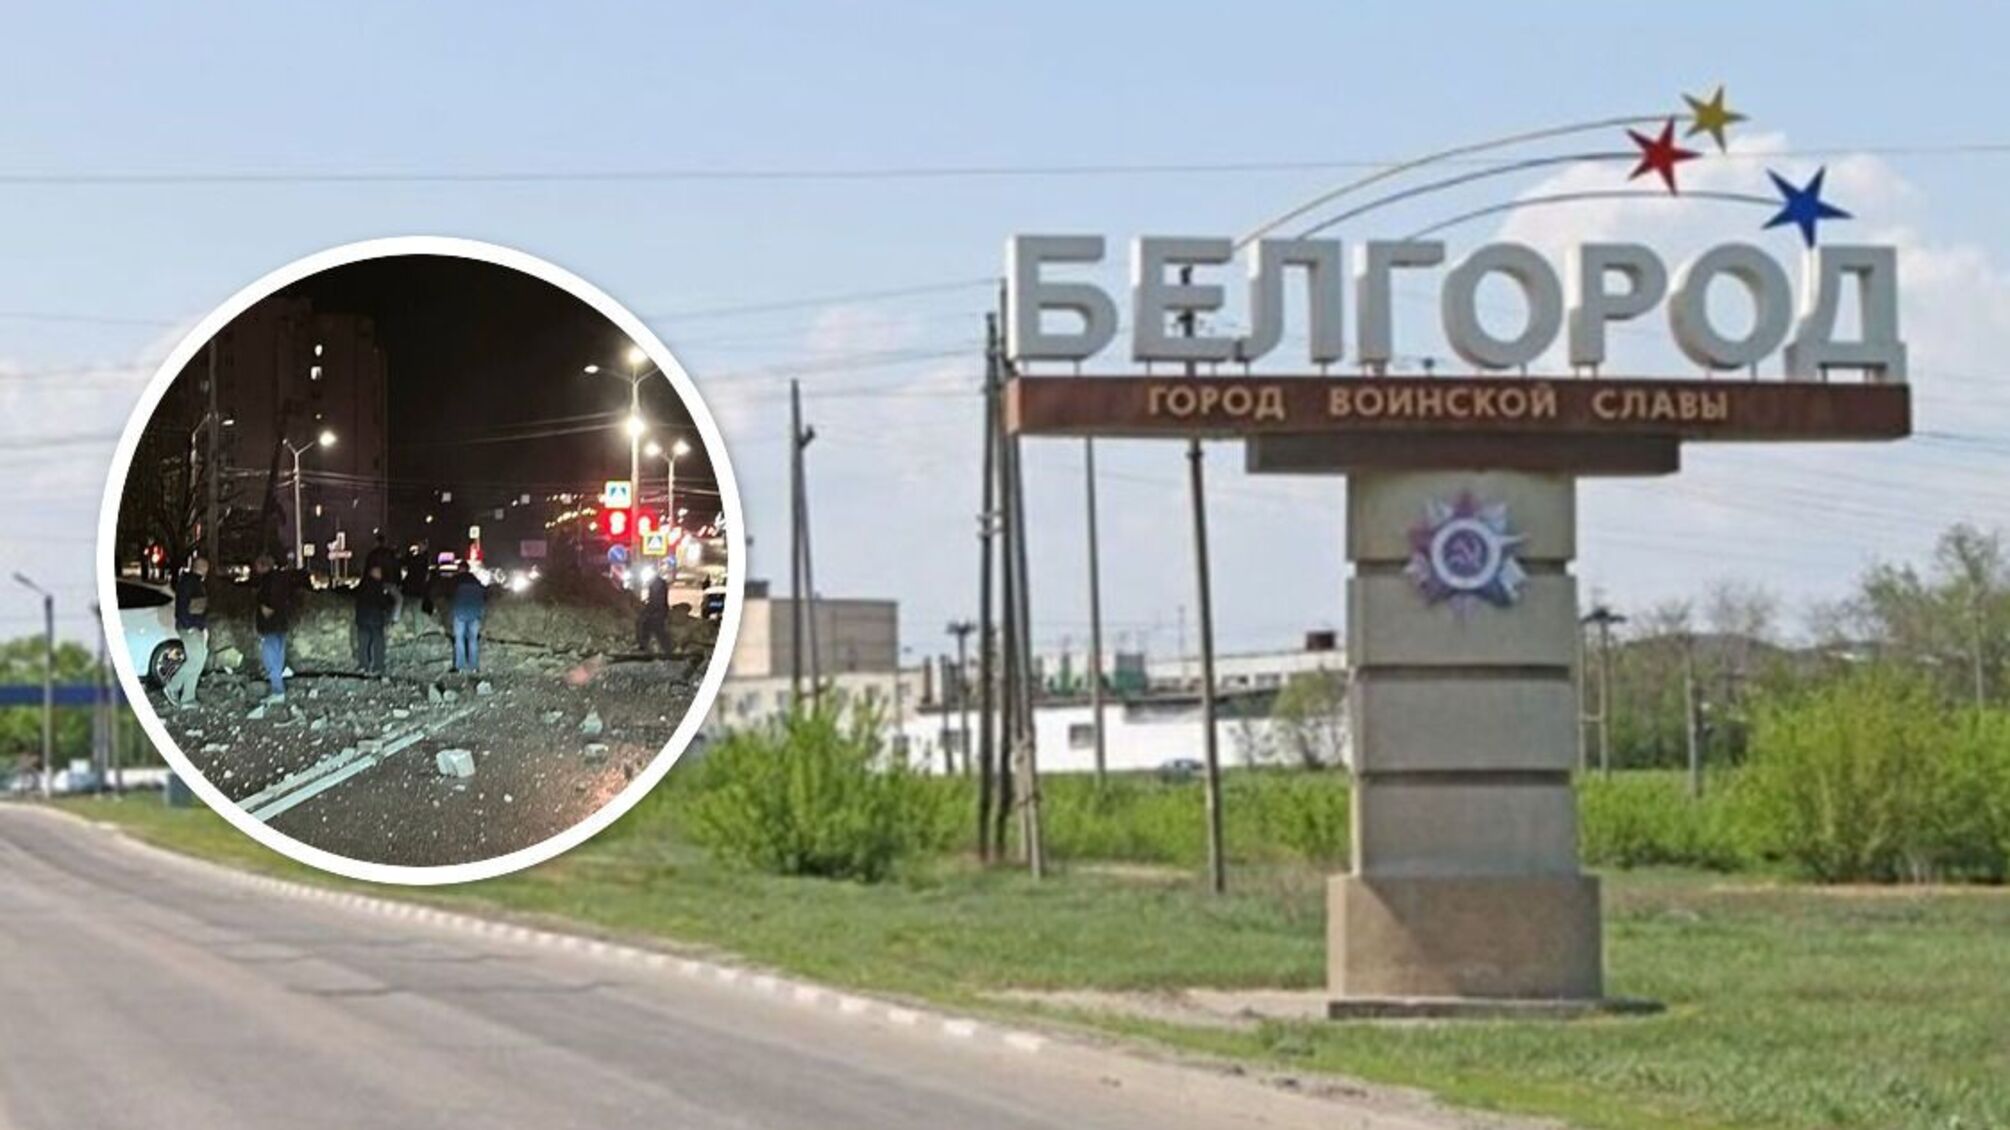 Взрыв в Белгороде: взрывная волна выбросила авто на крышу здания - что известно (фото, видео, обновление)